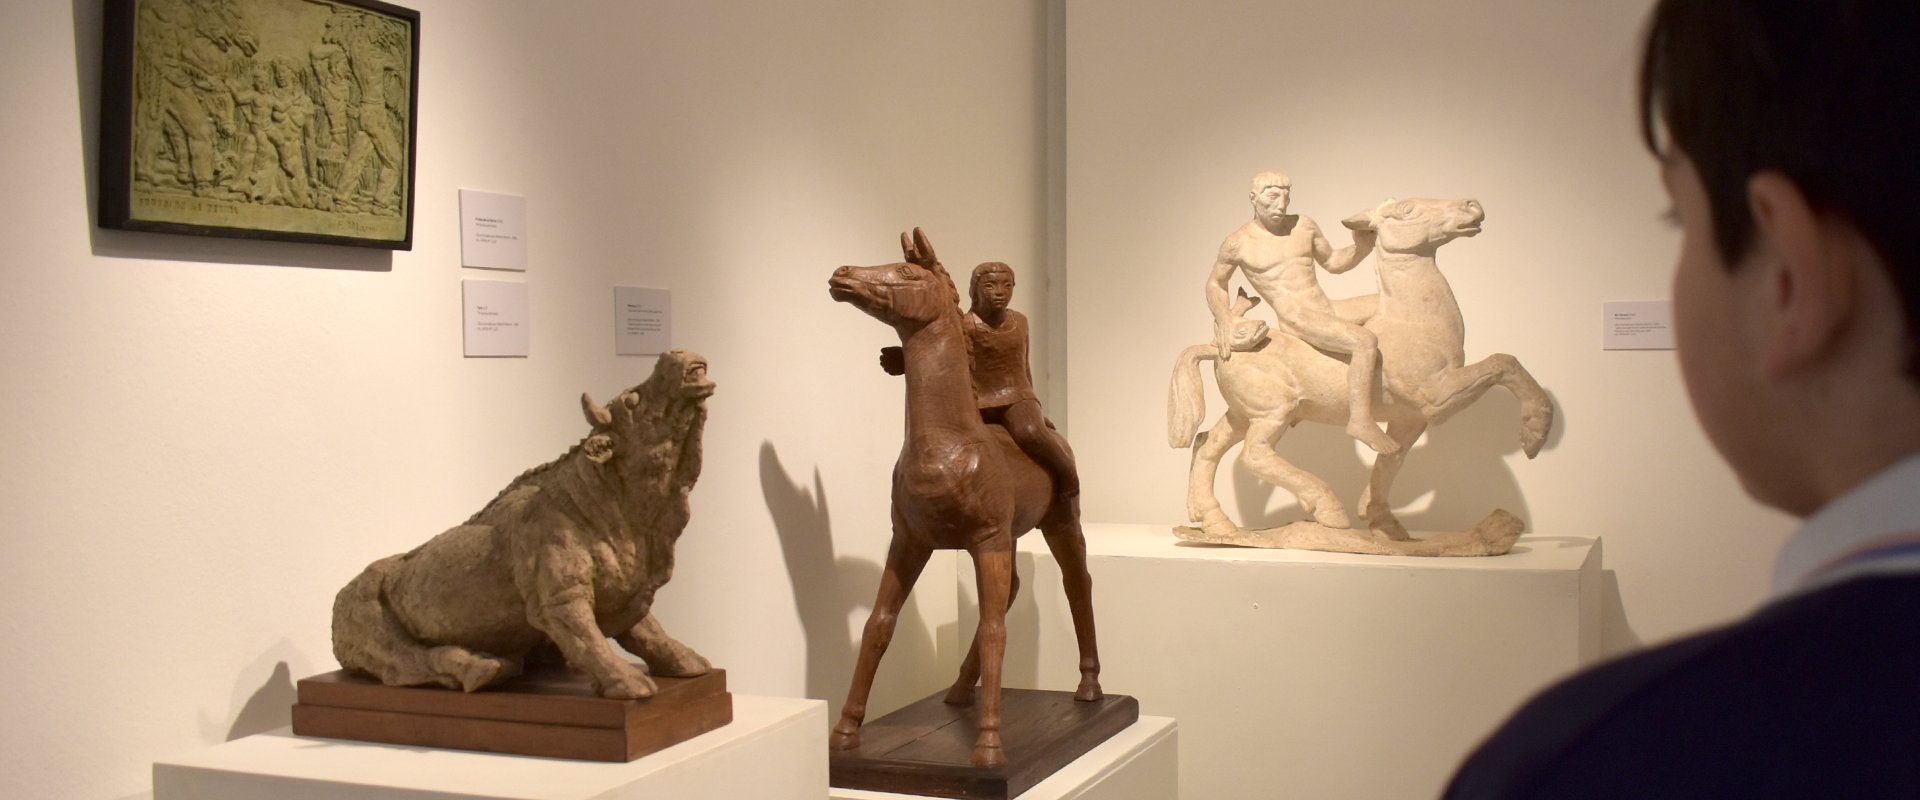 Se expone una nueva selección de obras de Francisco Marini en el Museo Provincial de Bellas Artes